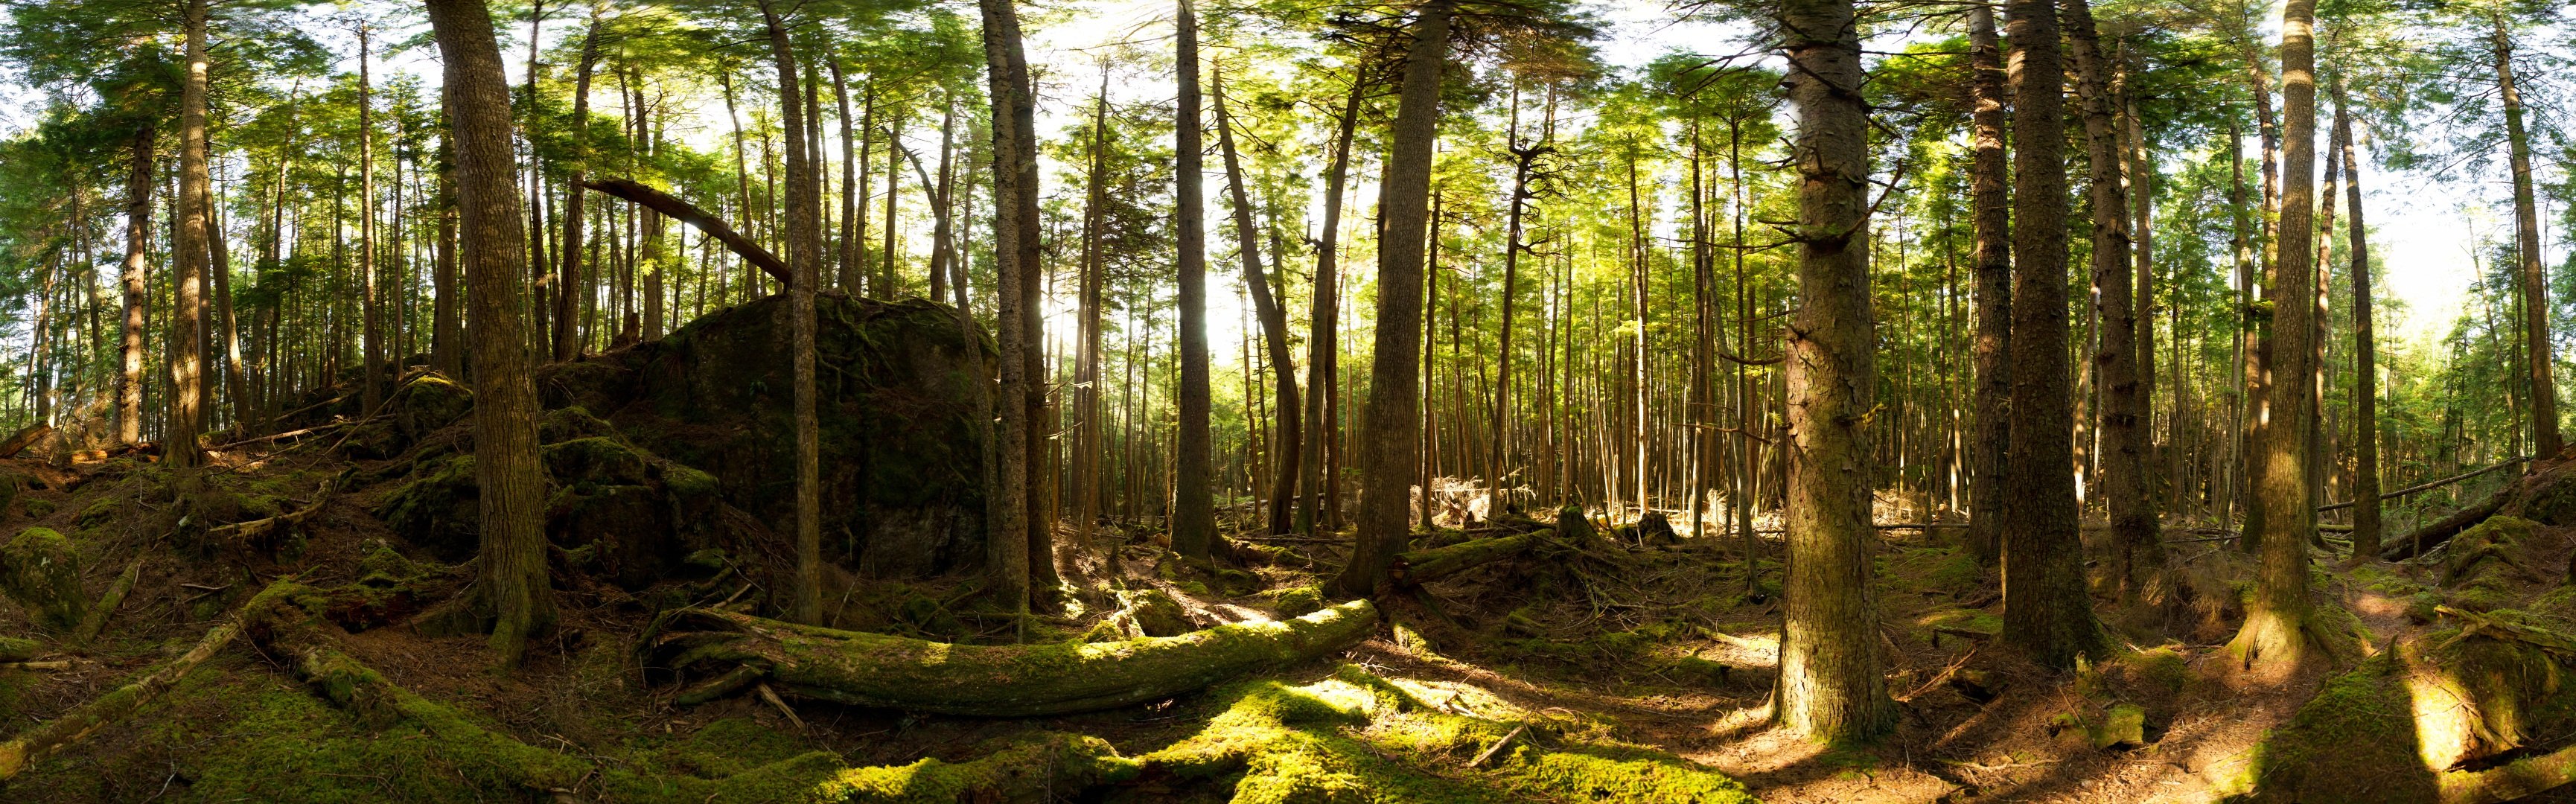 Панорамное изображение леса